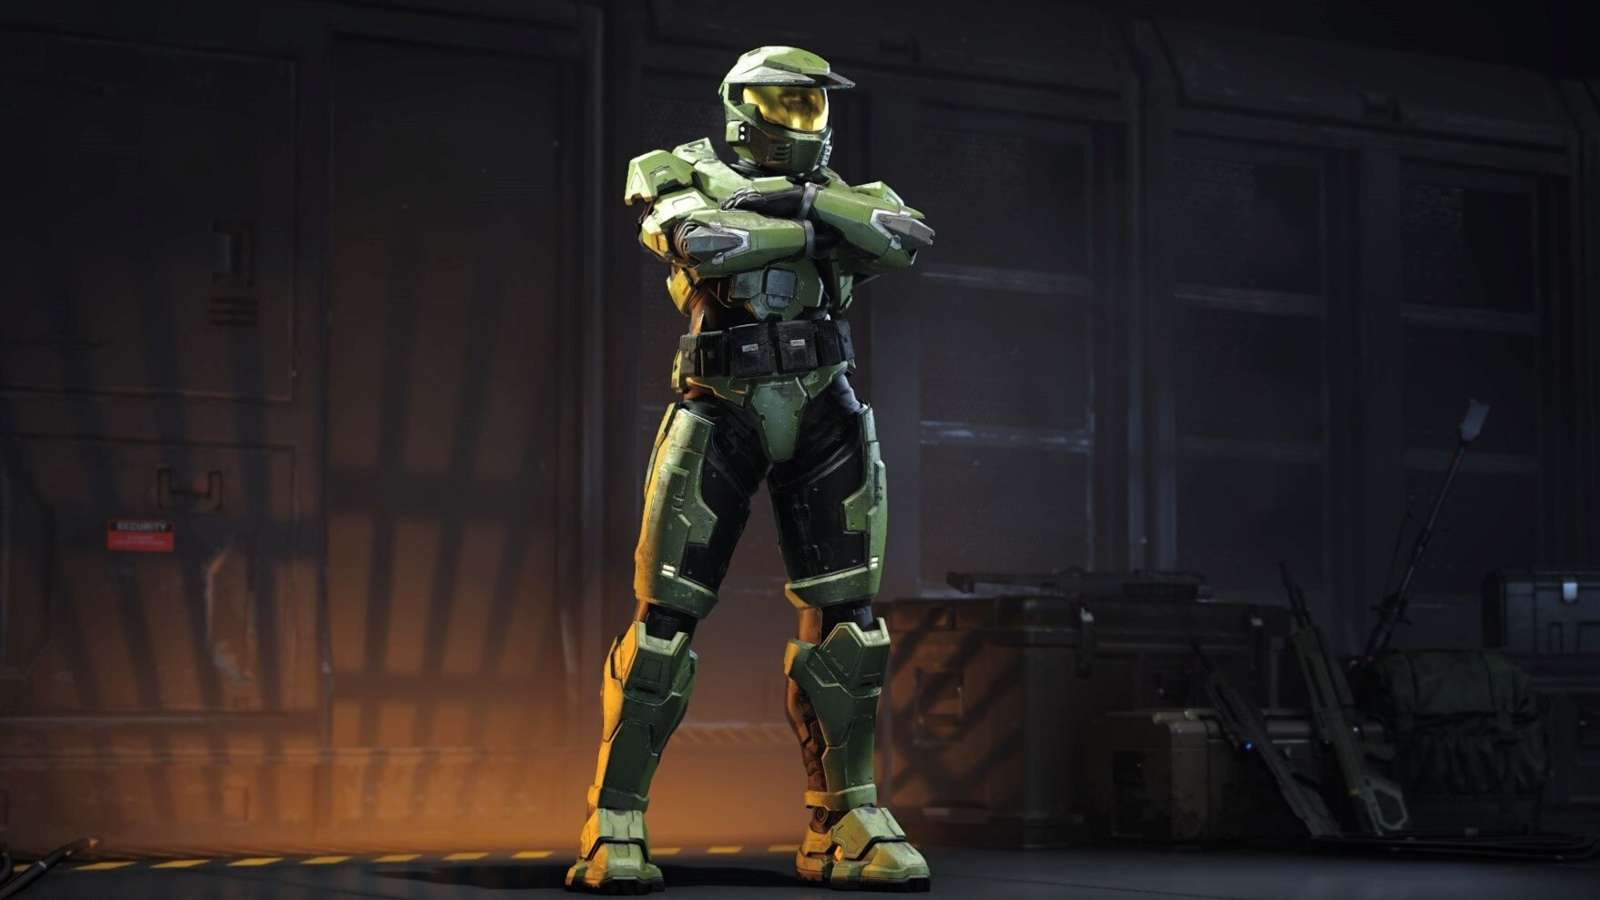 Halo CE's Mark V armor in Halo Infinite